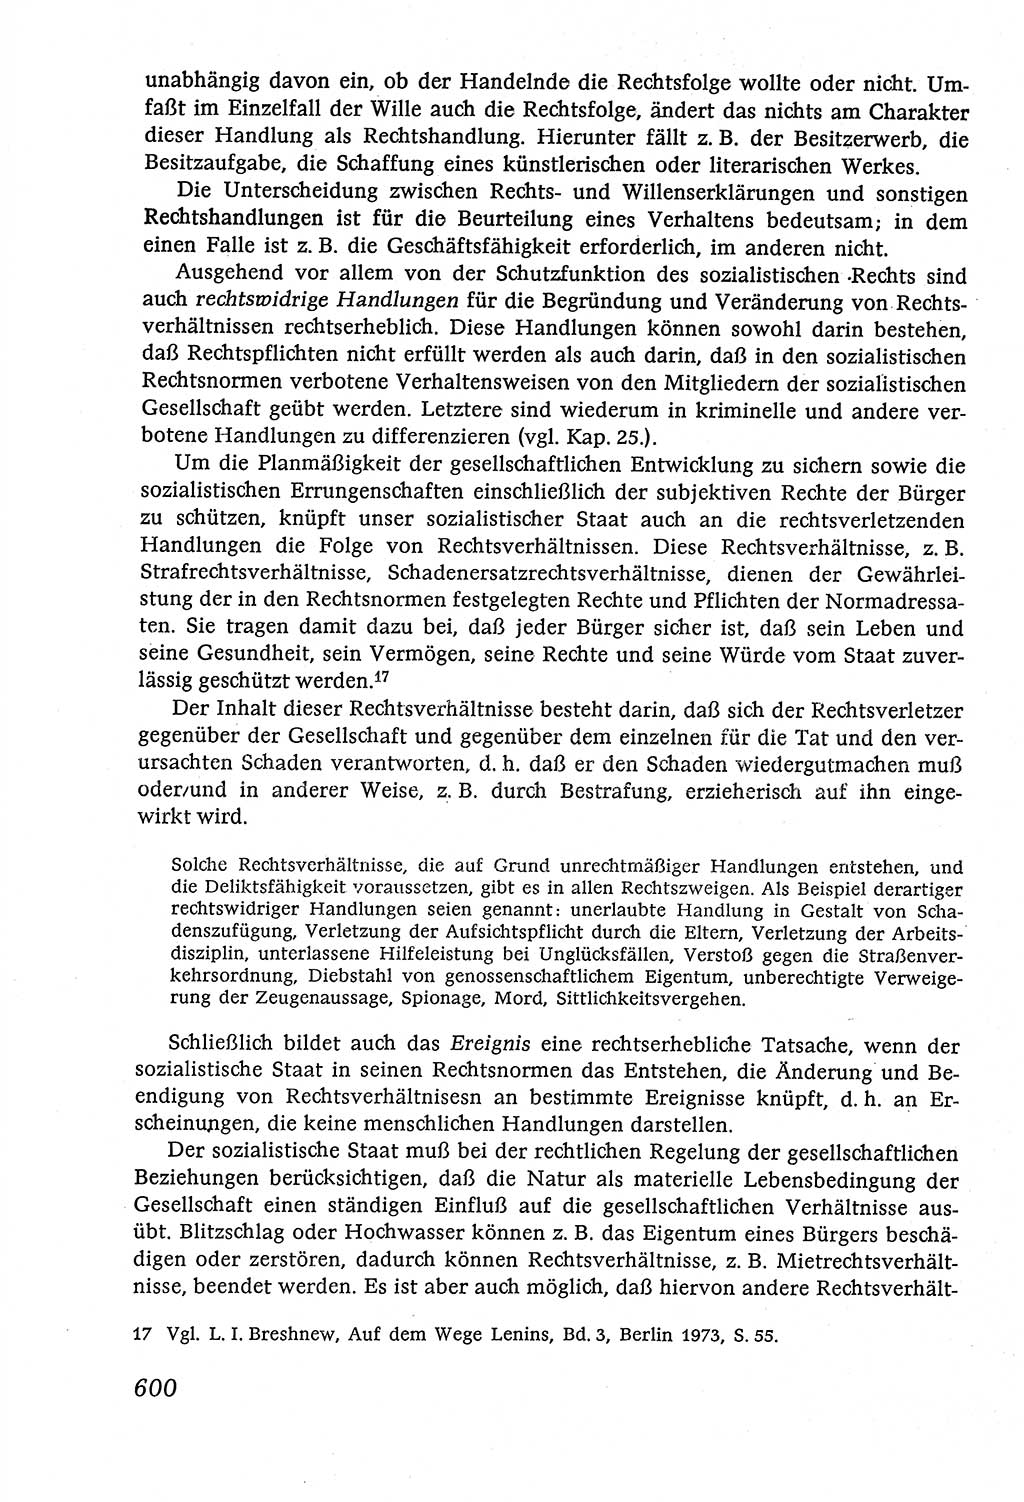 Marxistisch-leninistische (ML) Staats- und Rechtstheorie [Deutsche Demokratische Republik (DDR)], Lehrbuch 1980, Seite 600 (ML St.-R.-Th. DDR Lb. 1980, S. 600)